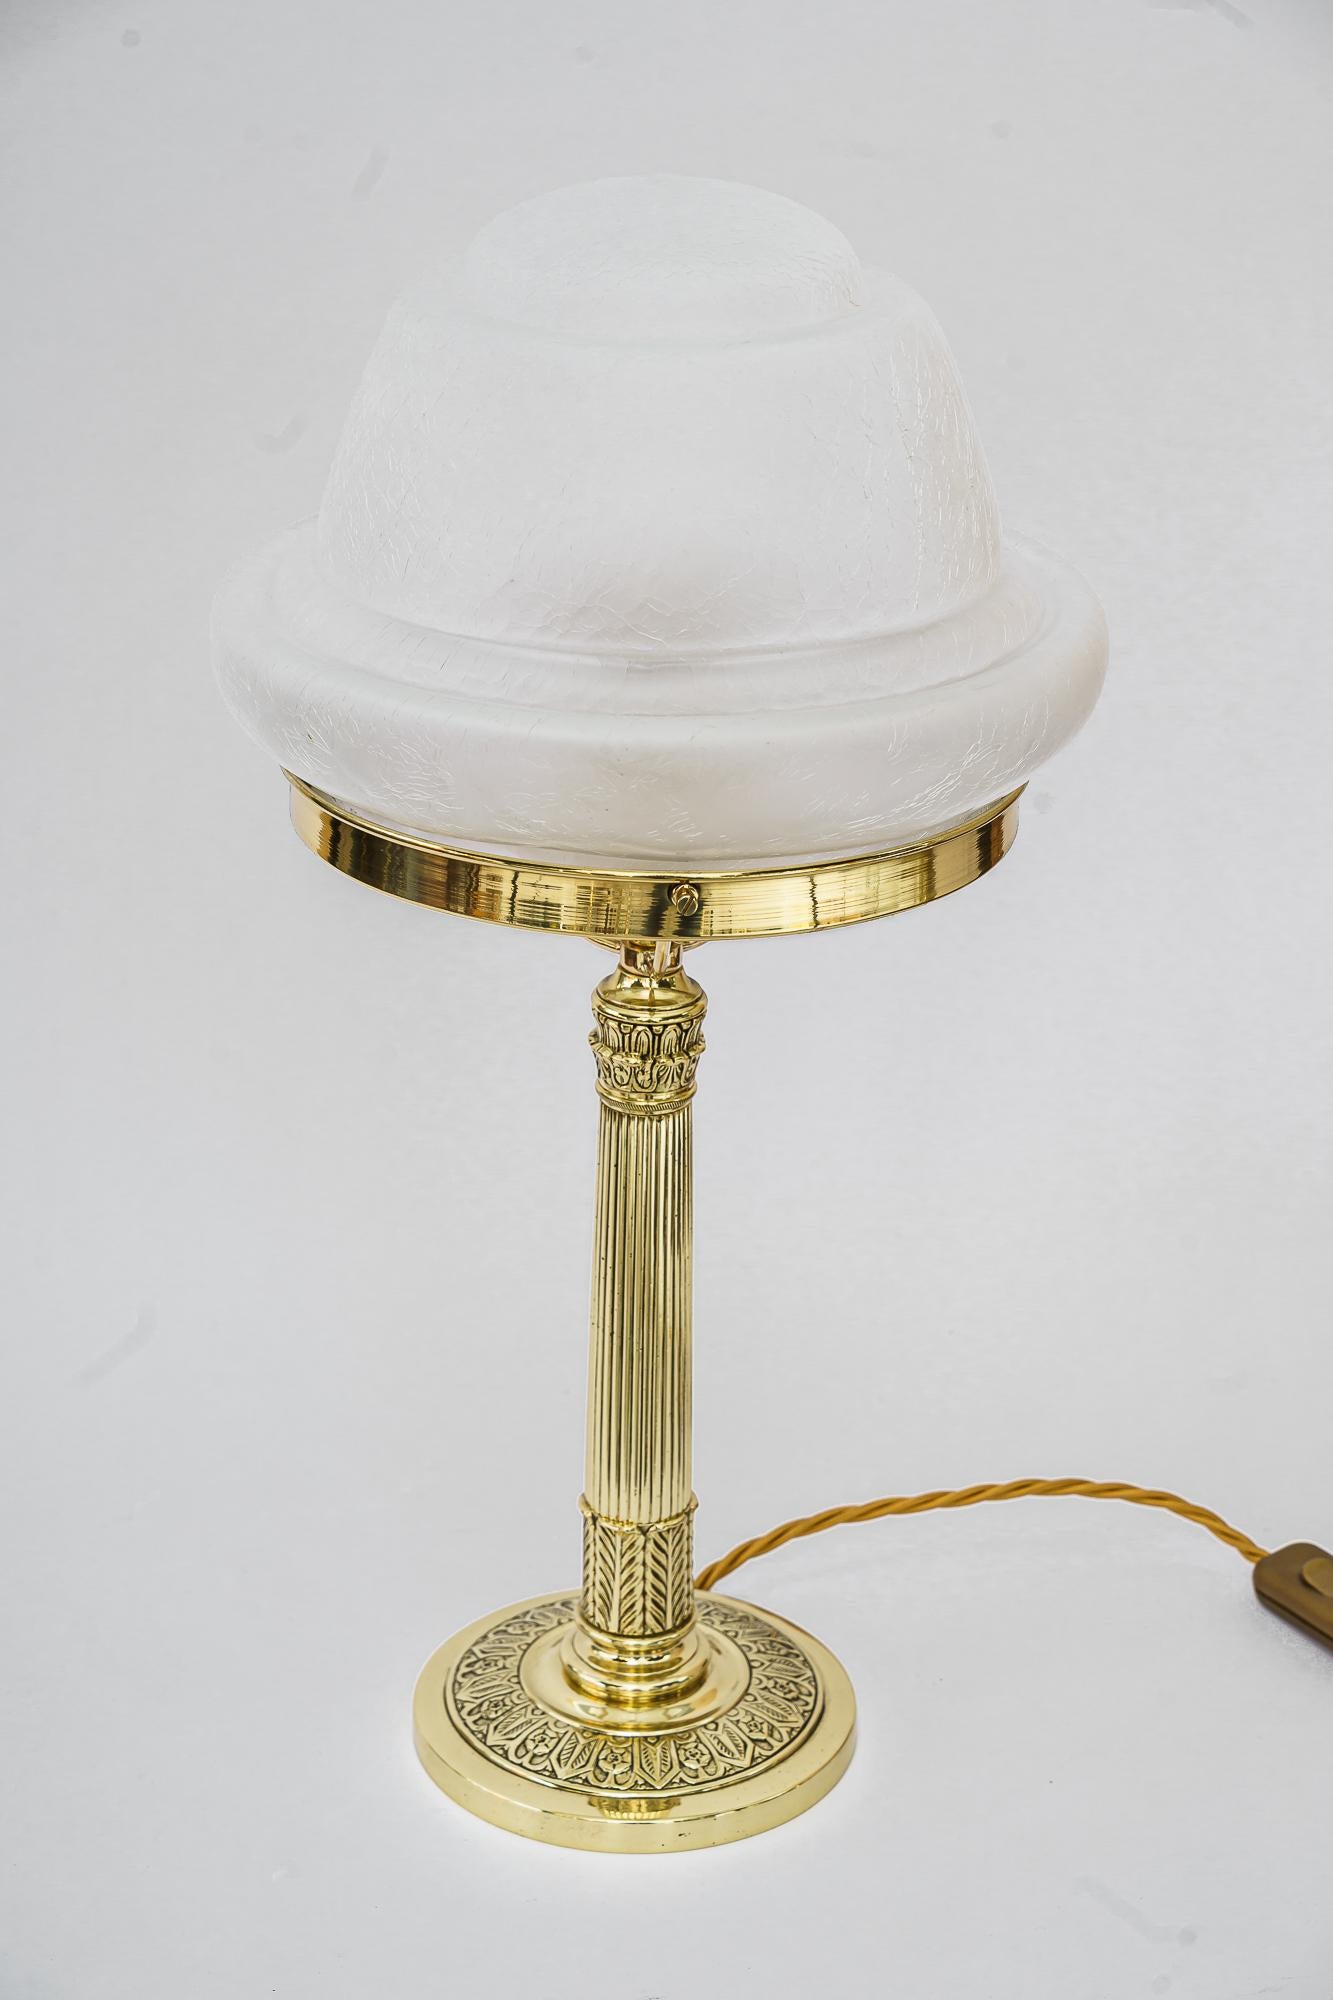 Lampe de table art déco vienne vers 1920
Polis et émaillés au four
Abat-jour original en verre antique